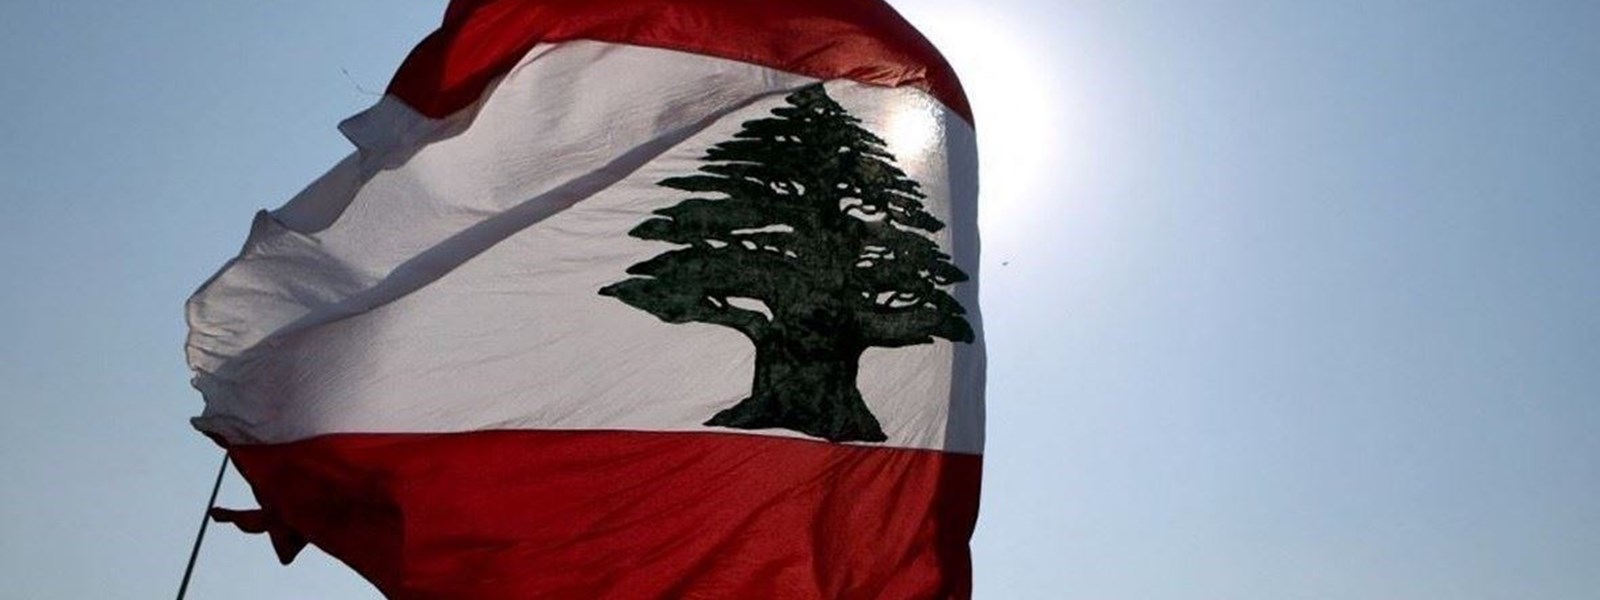 لبنان.